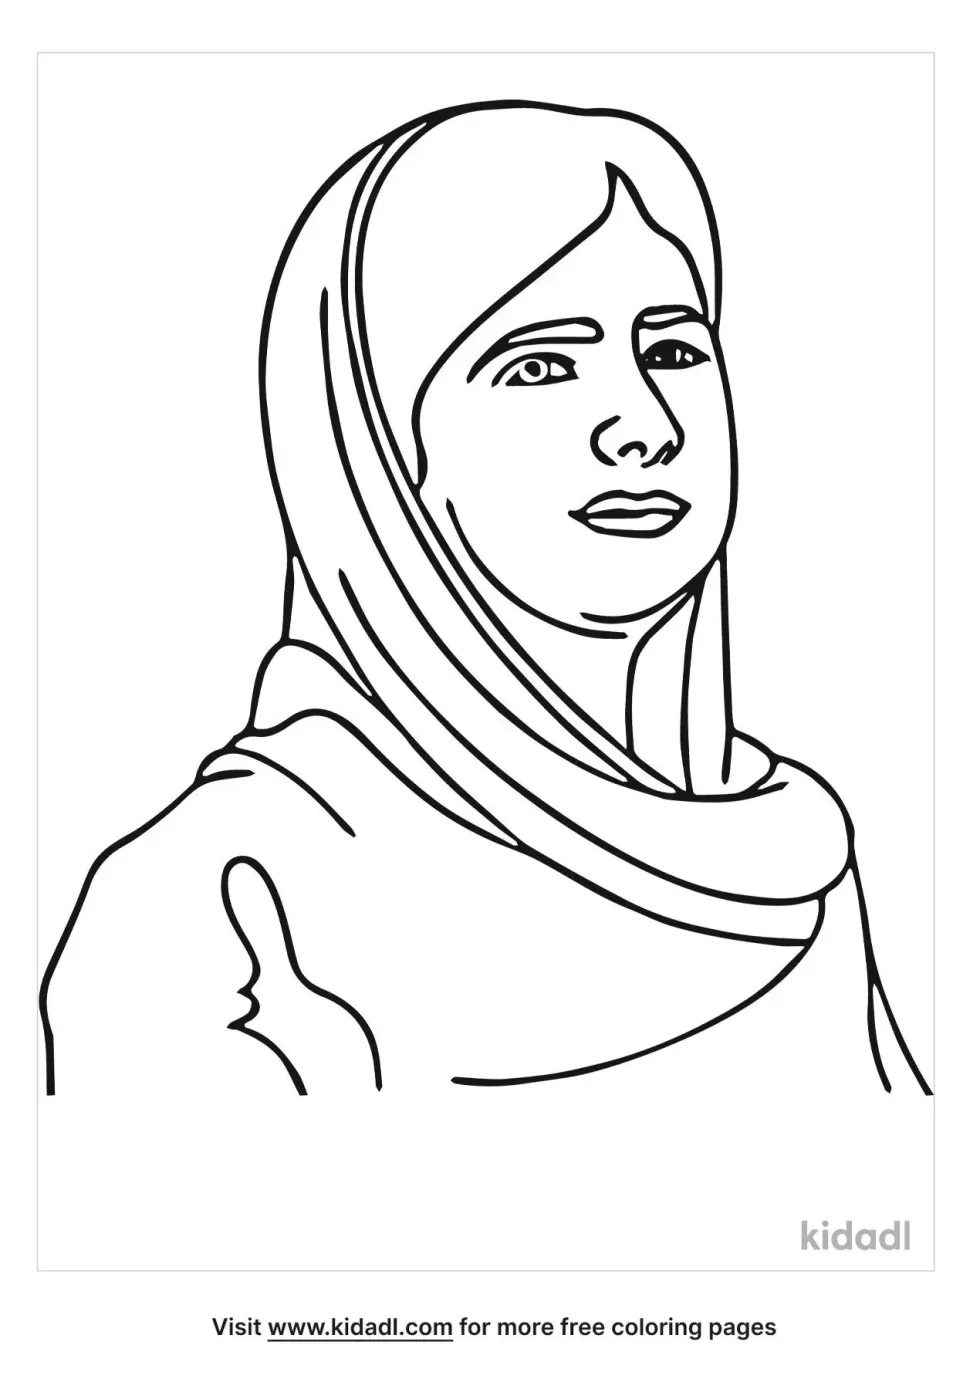 Malala Coloring Page